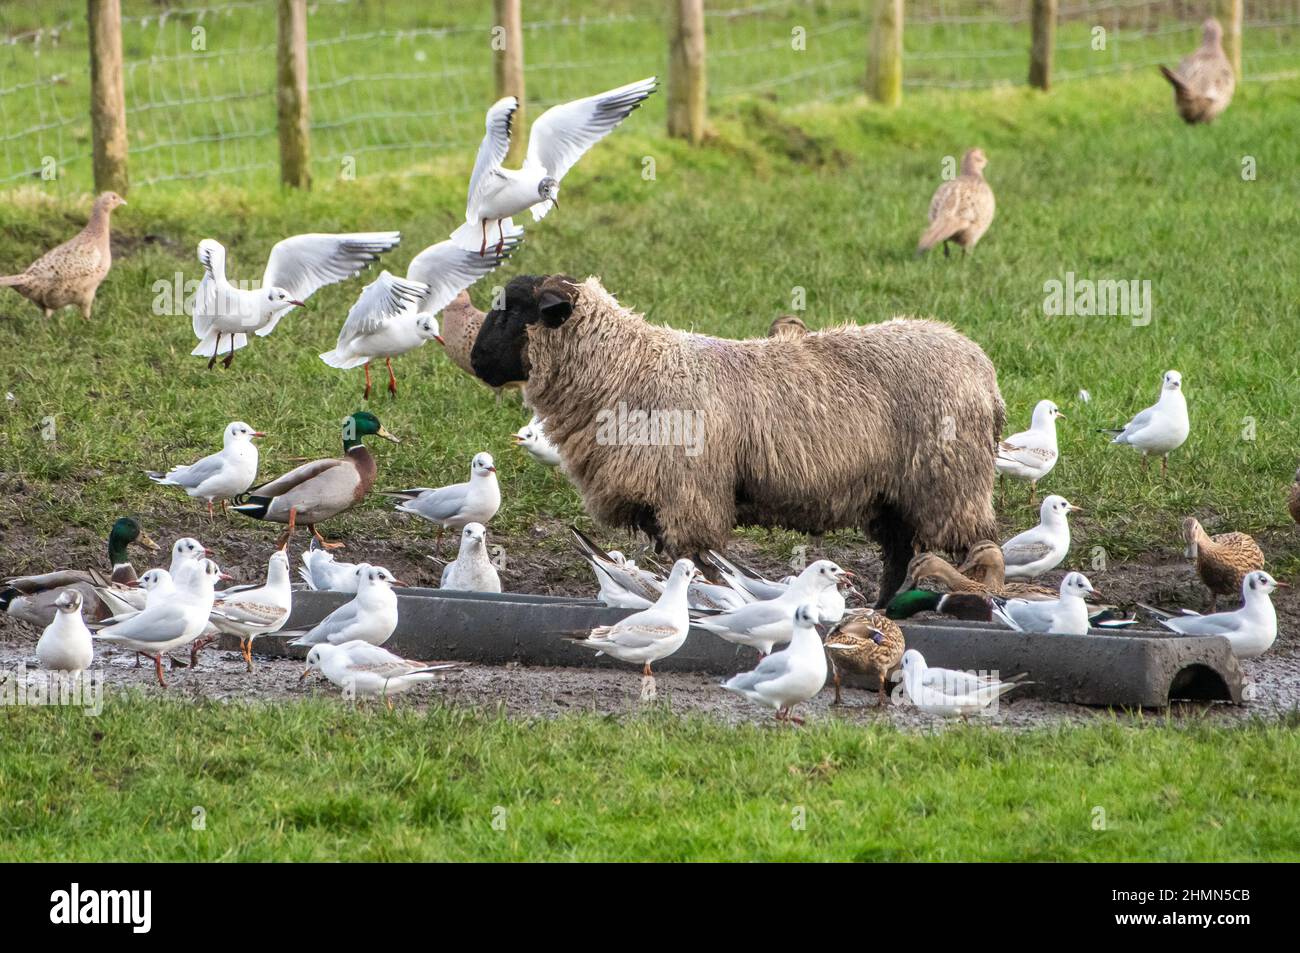 Des oiseaux se rassemblent autour d'un mouflon se nourrissant près de Preston, Lancashire, Royaume-Uni. Banque D'Images